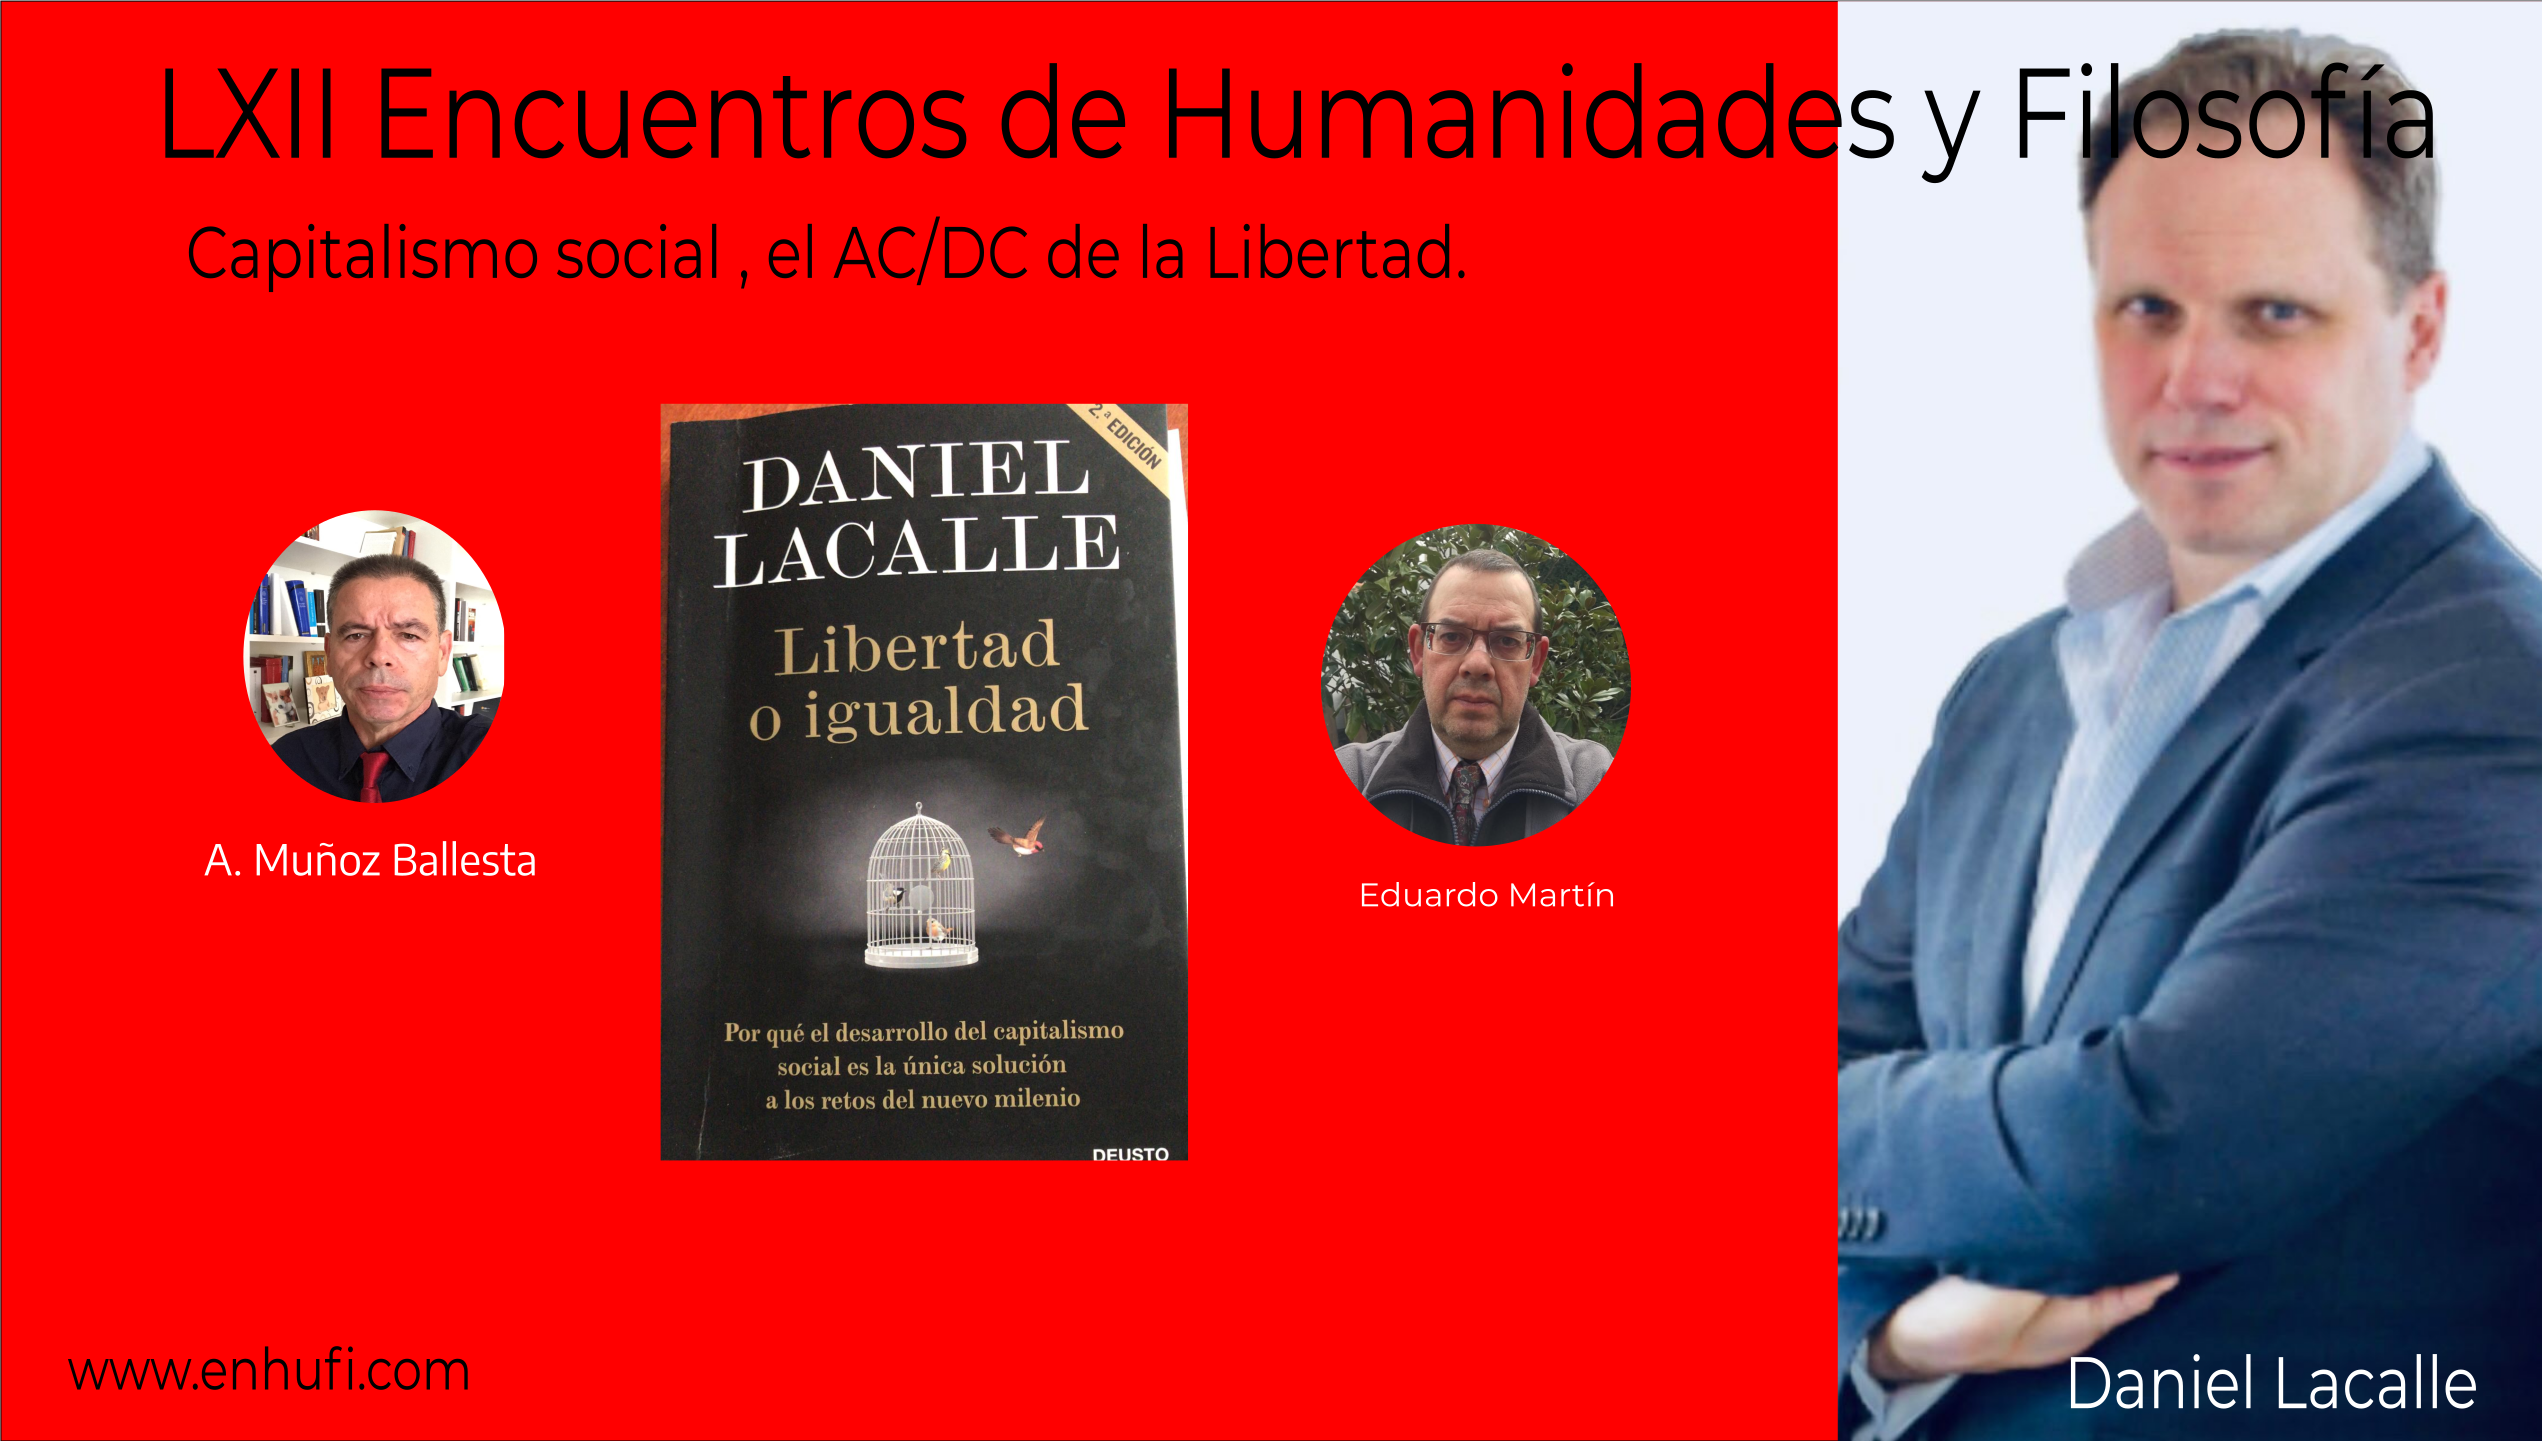 LXII Encuentros de Humanidades y Filosofía: Daniel Lacalle, capitalismo social , el AC/DC de la Libertad.